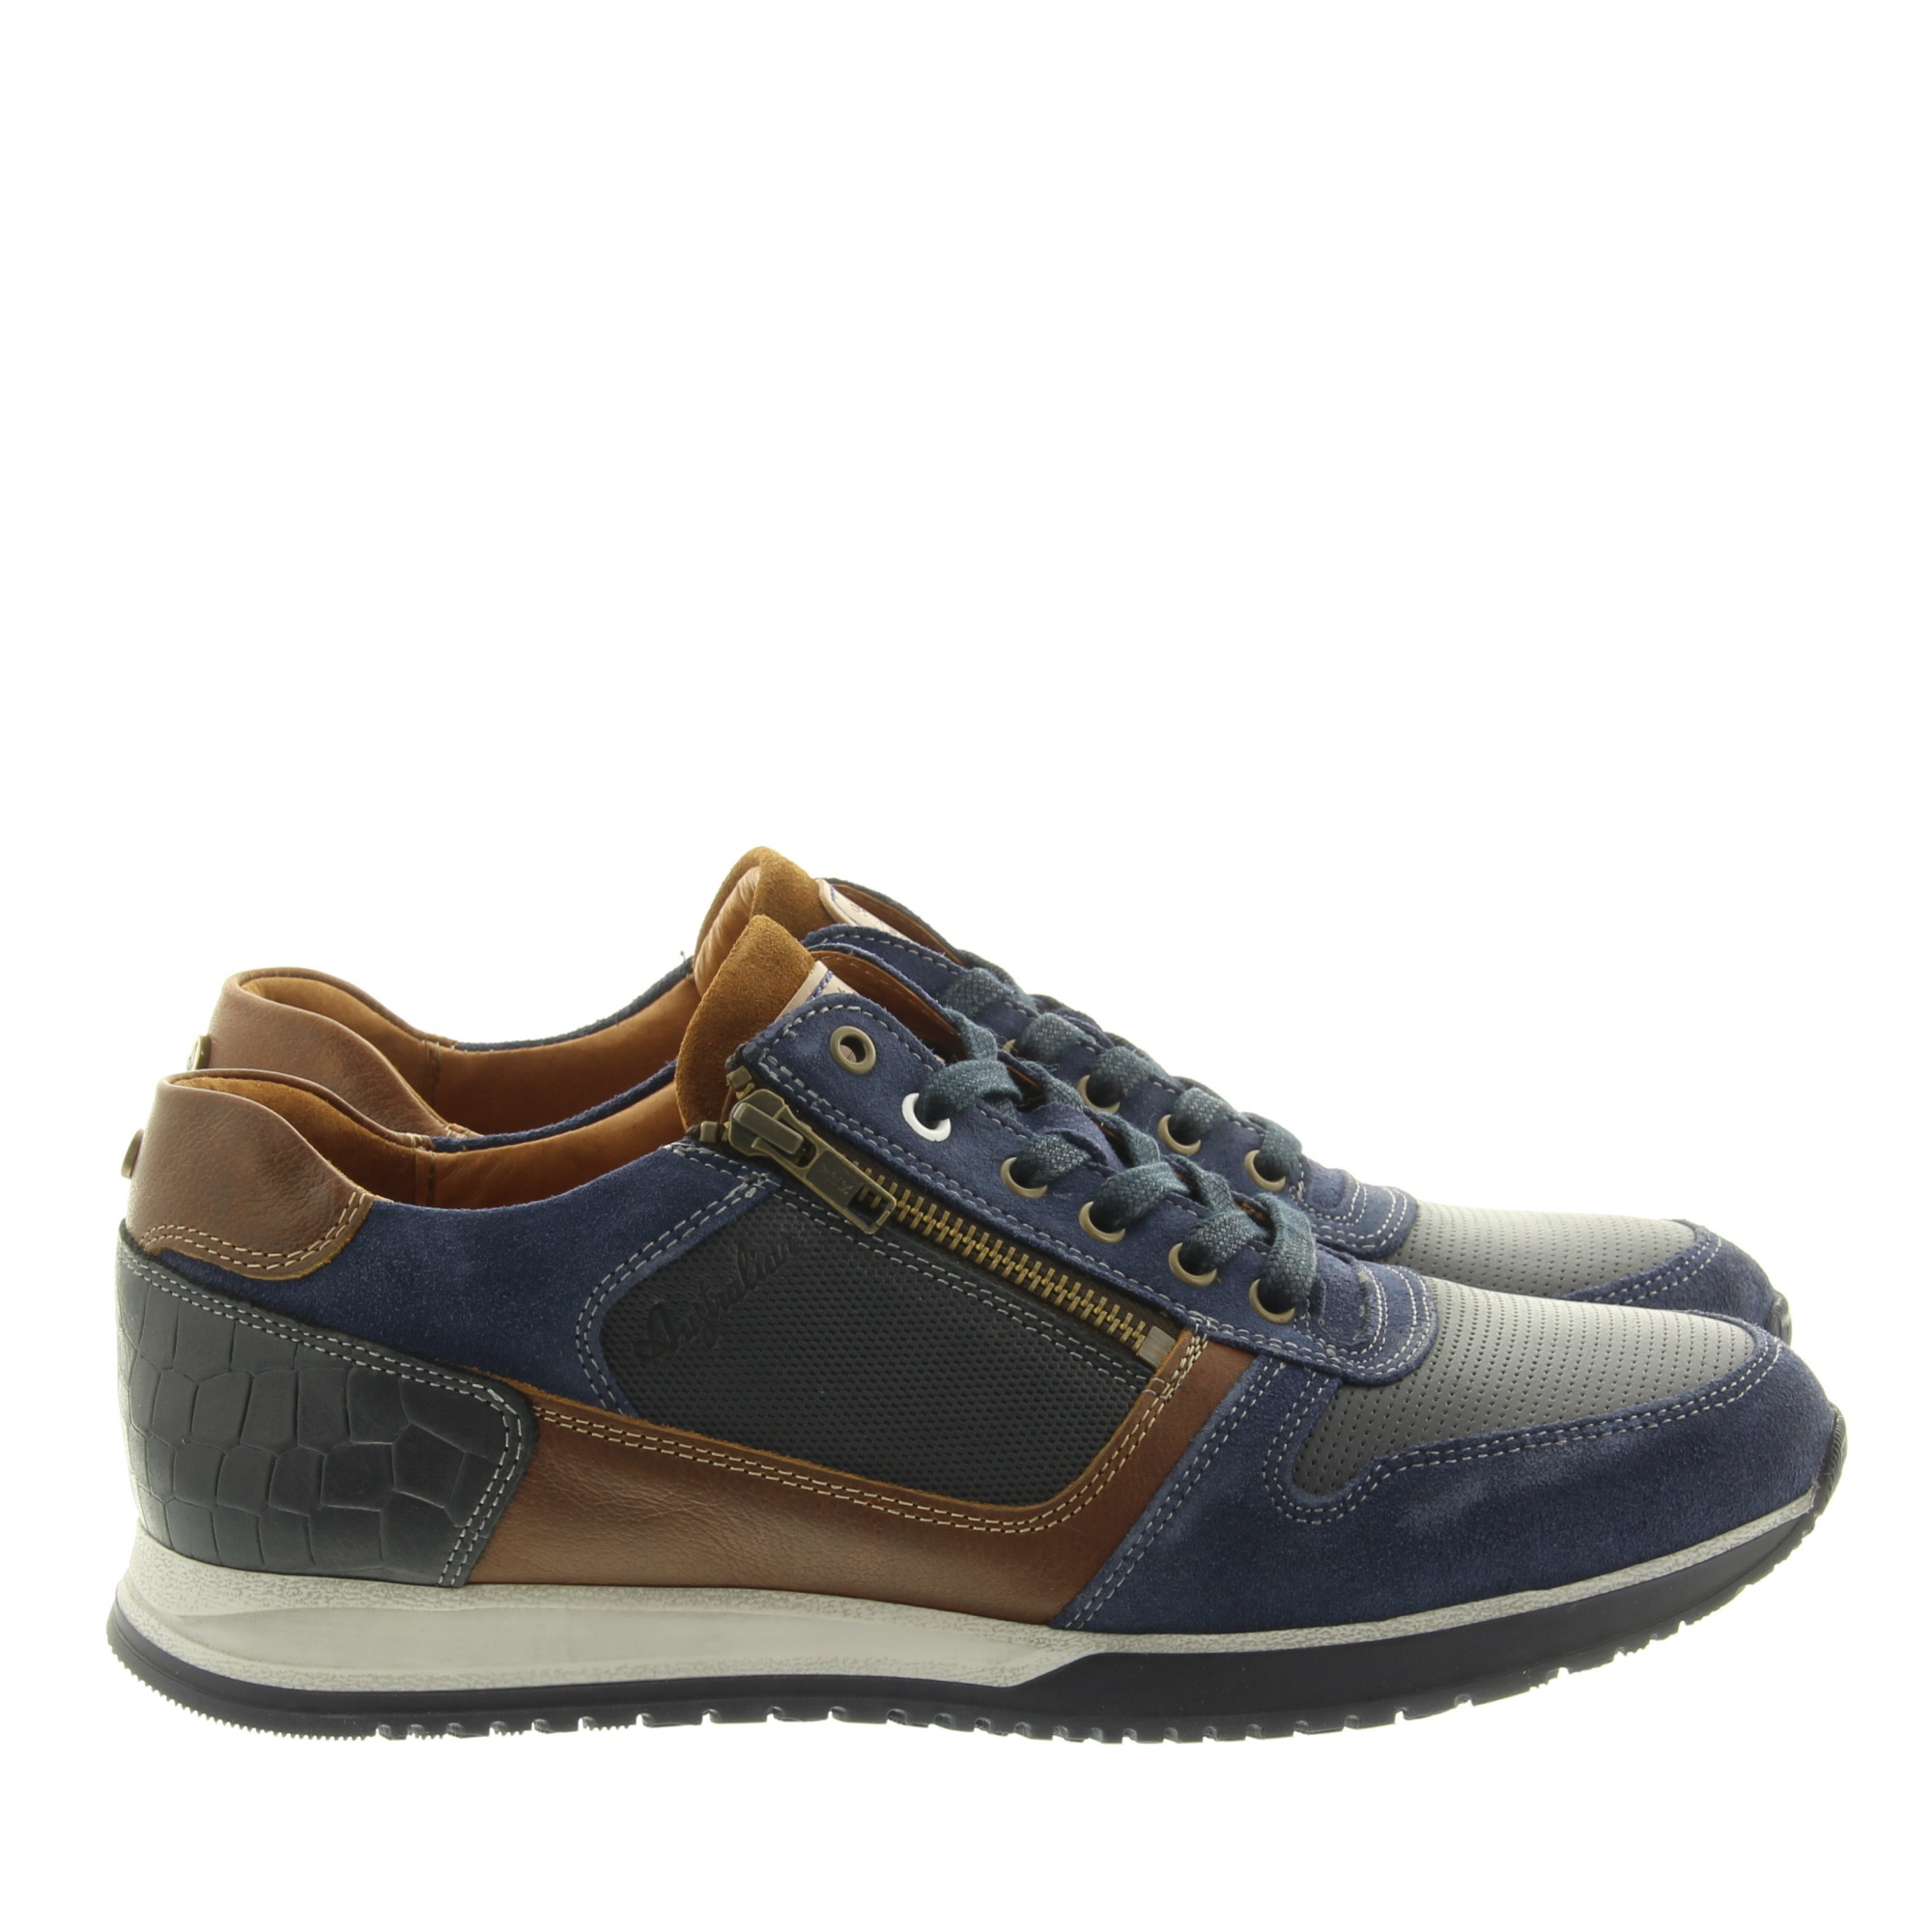 Australian Footwear Browning Width H 15.1508.02 SIP Ocean Blue Cognac